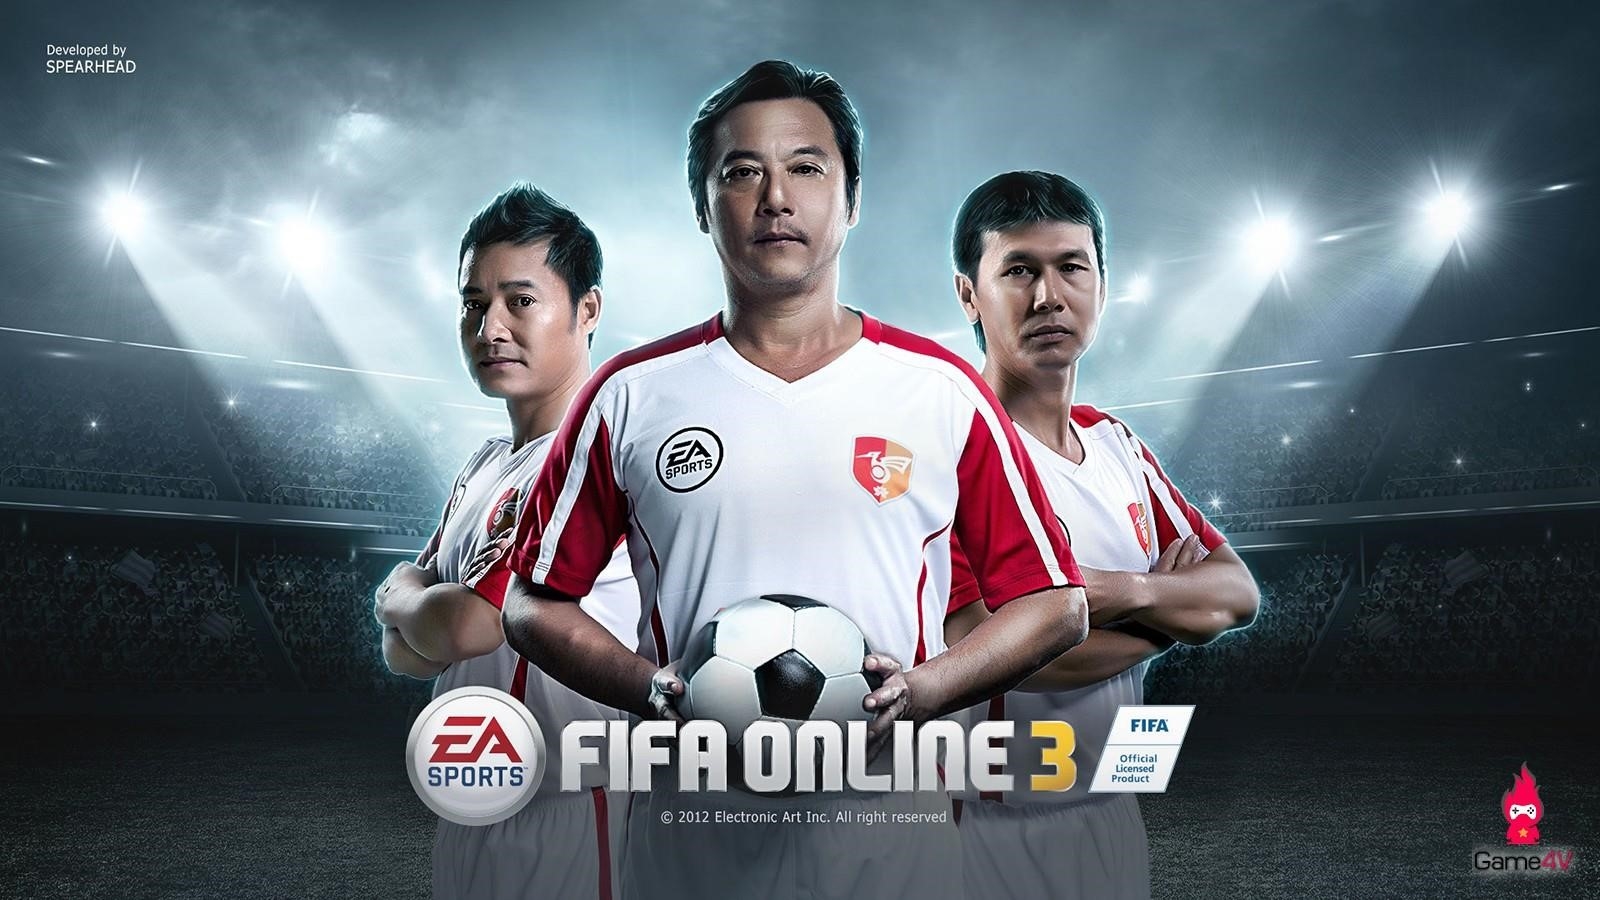 Fifa Online 3 nổi tiếng trong một thời gian.